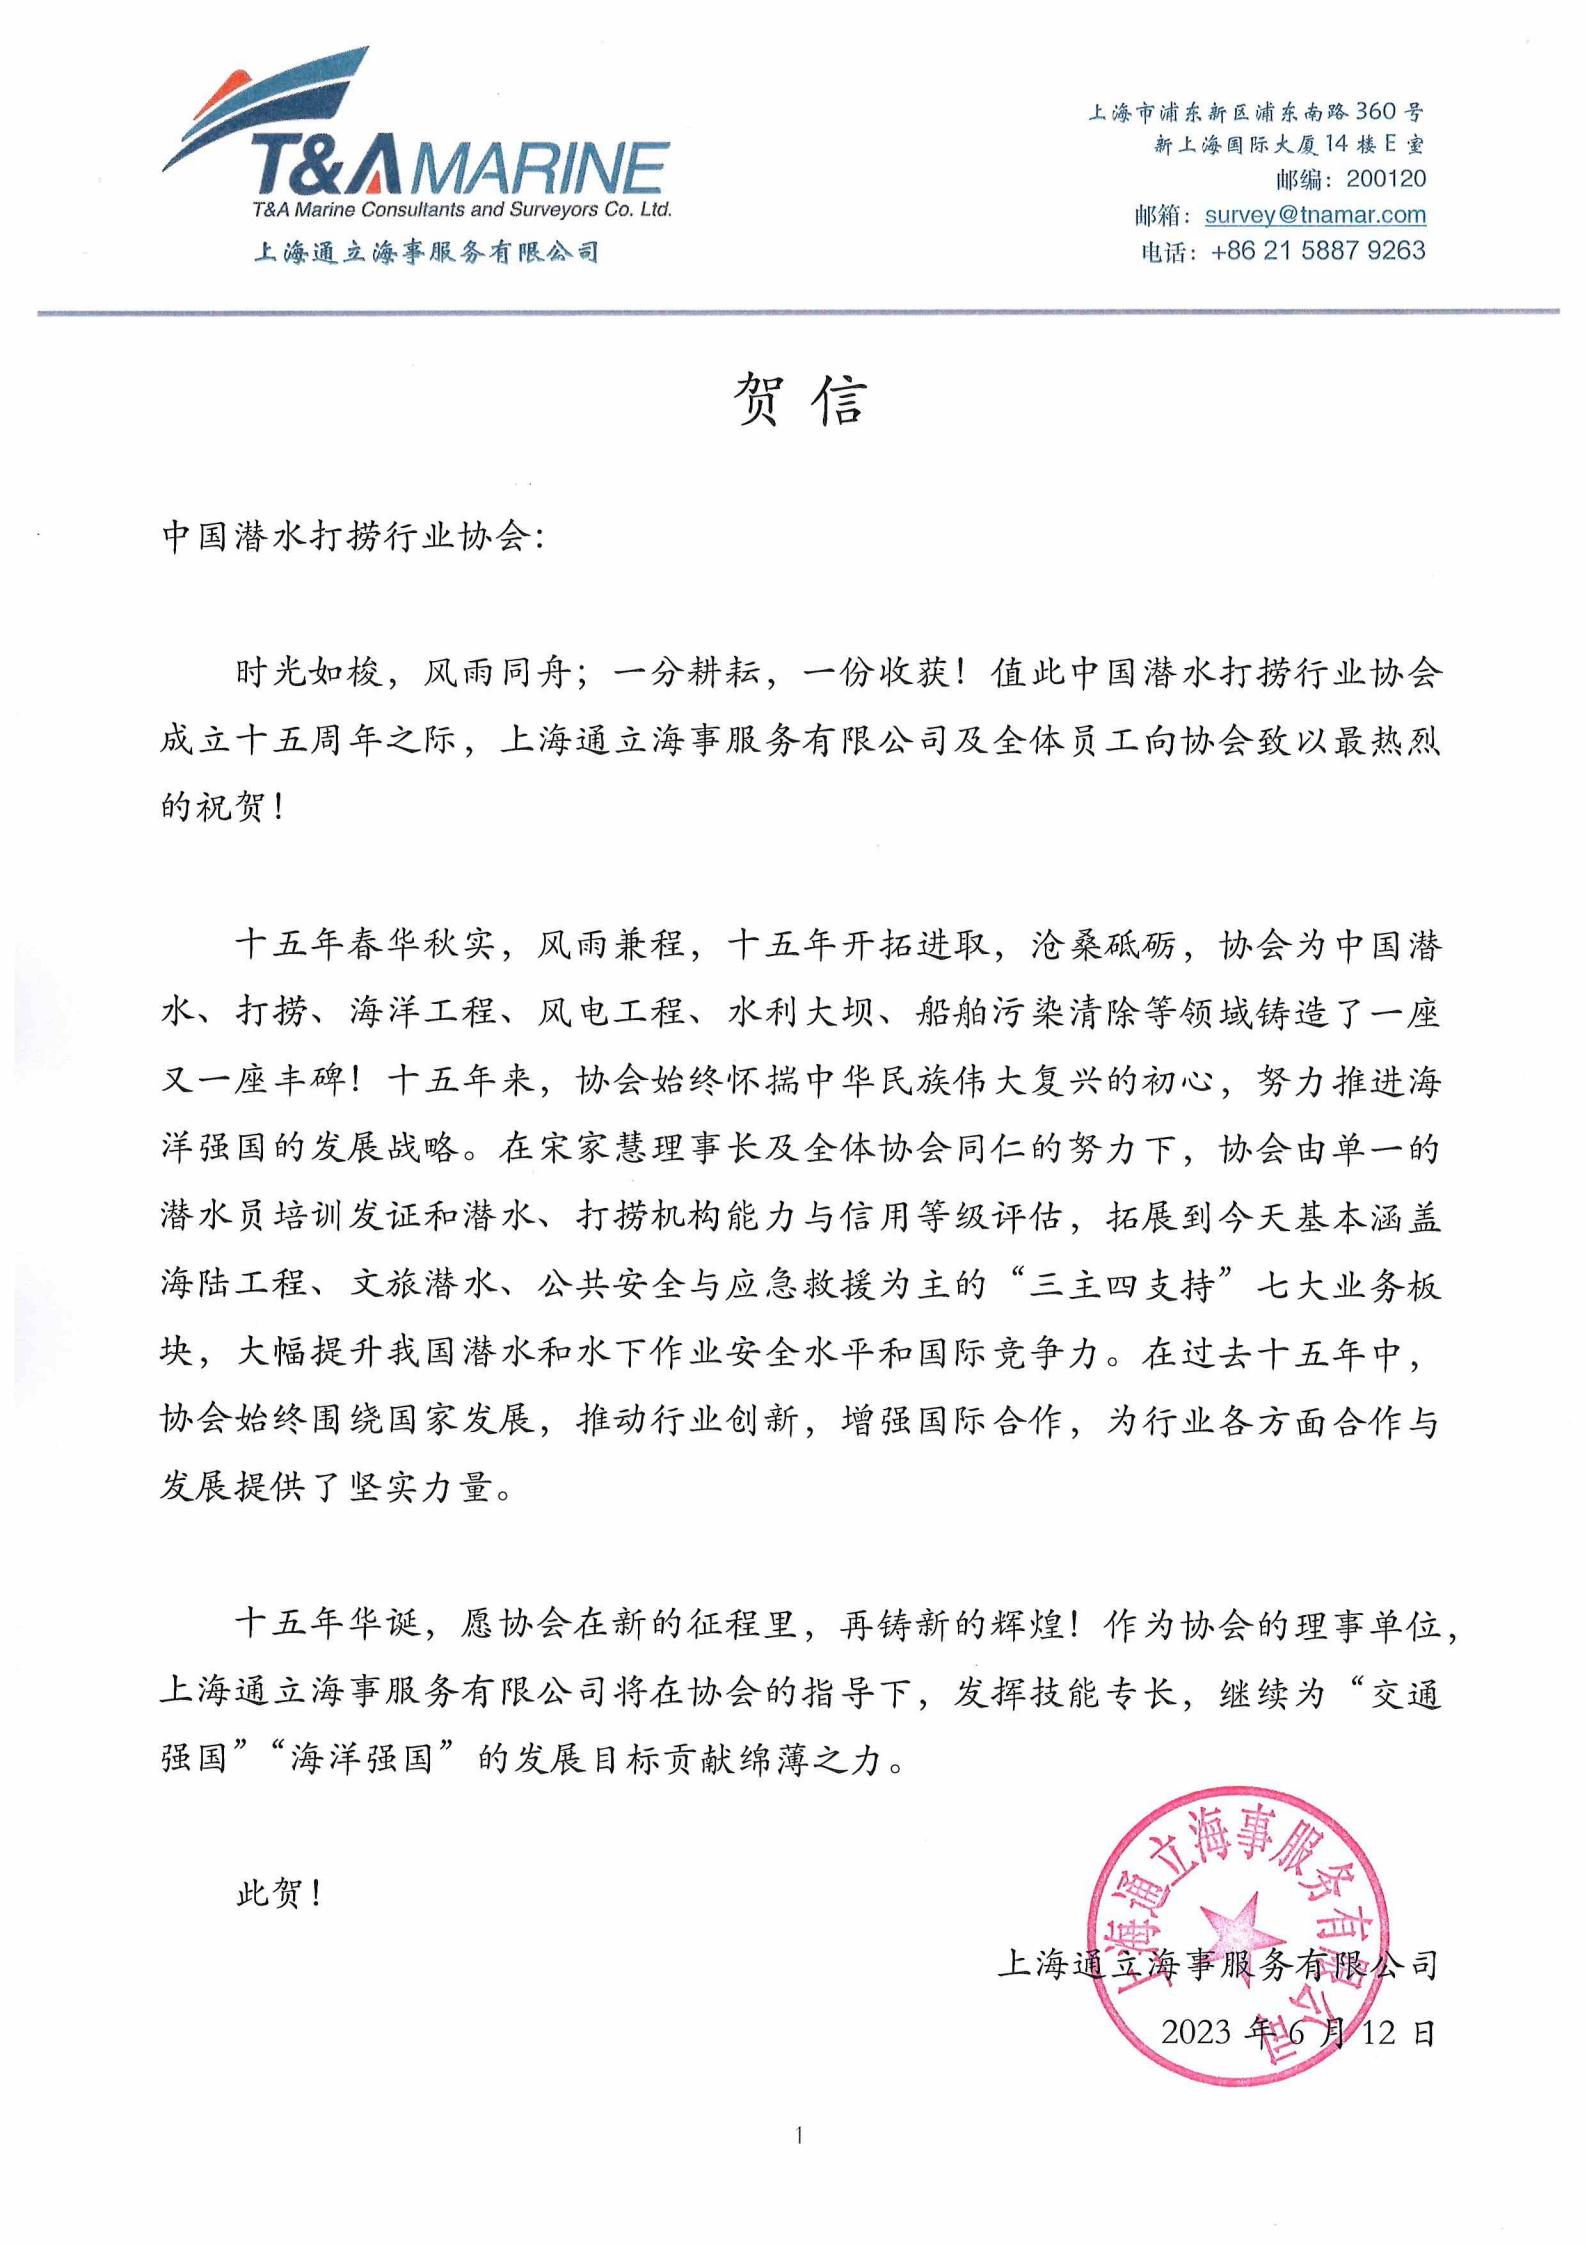 上海通立海事服务有限公司来信祝贺协会成立十五周年_00.jpg